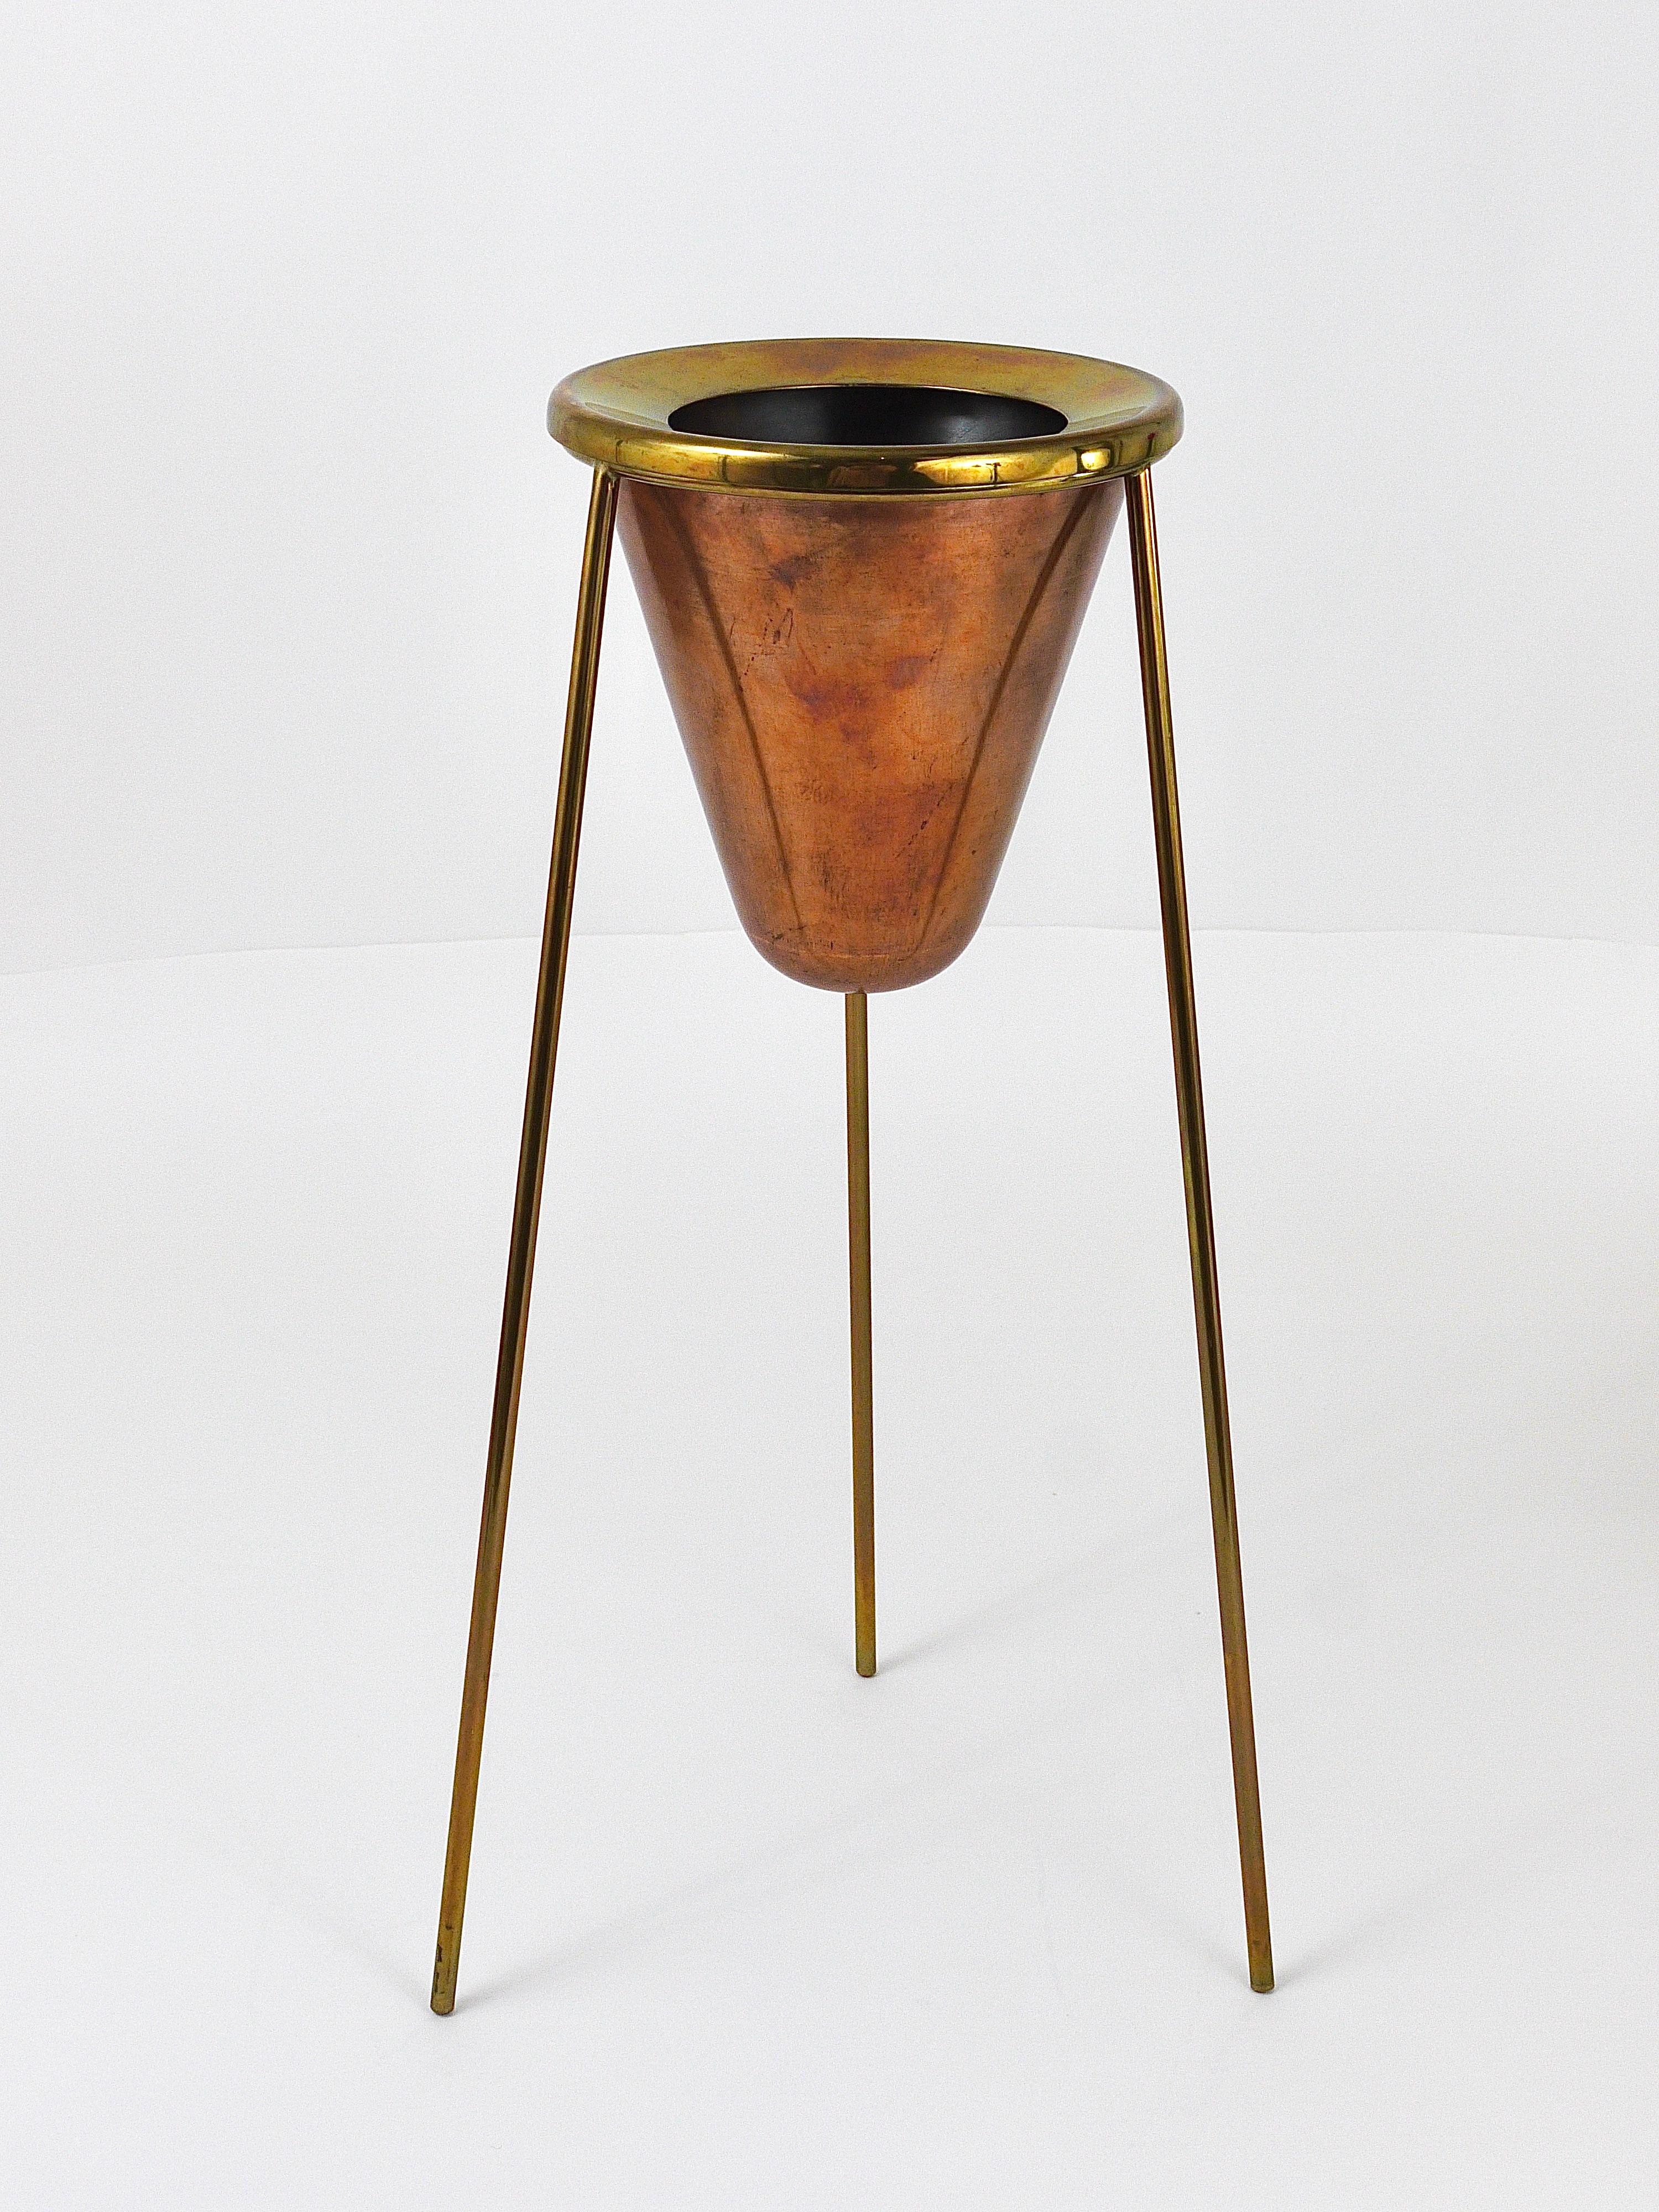 Rare Carl Aubock Copper & Brass Tripod Floor Ashtray, Austria, 1950s For Sale 8